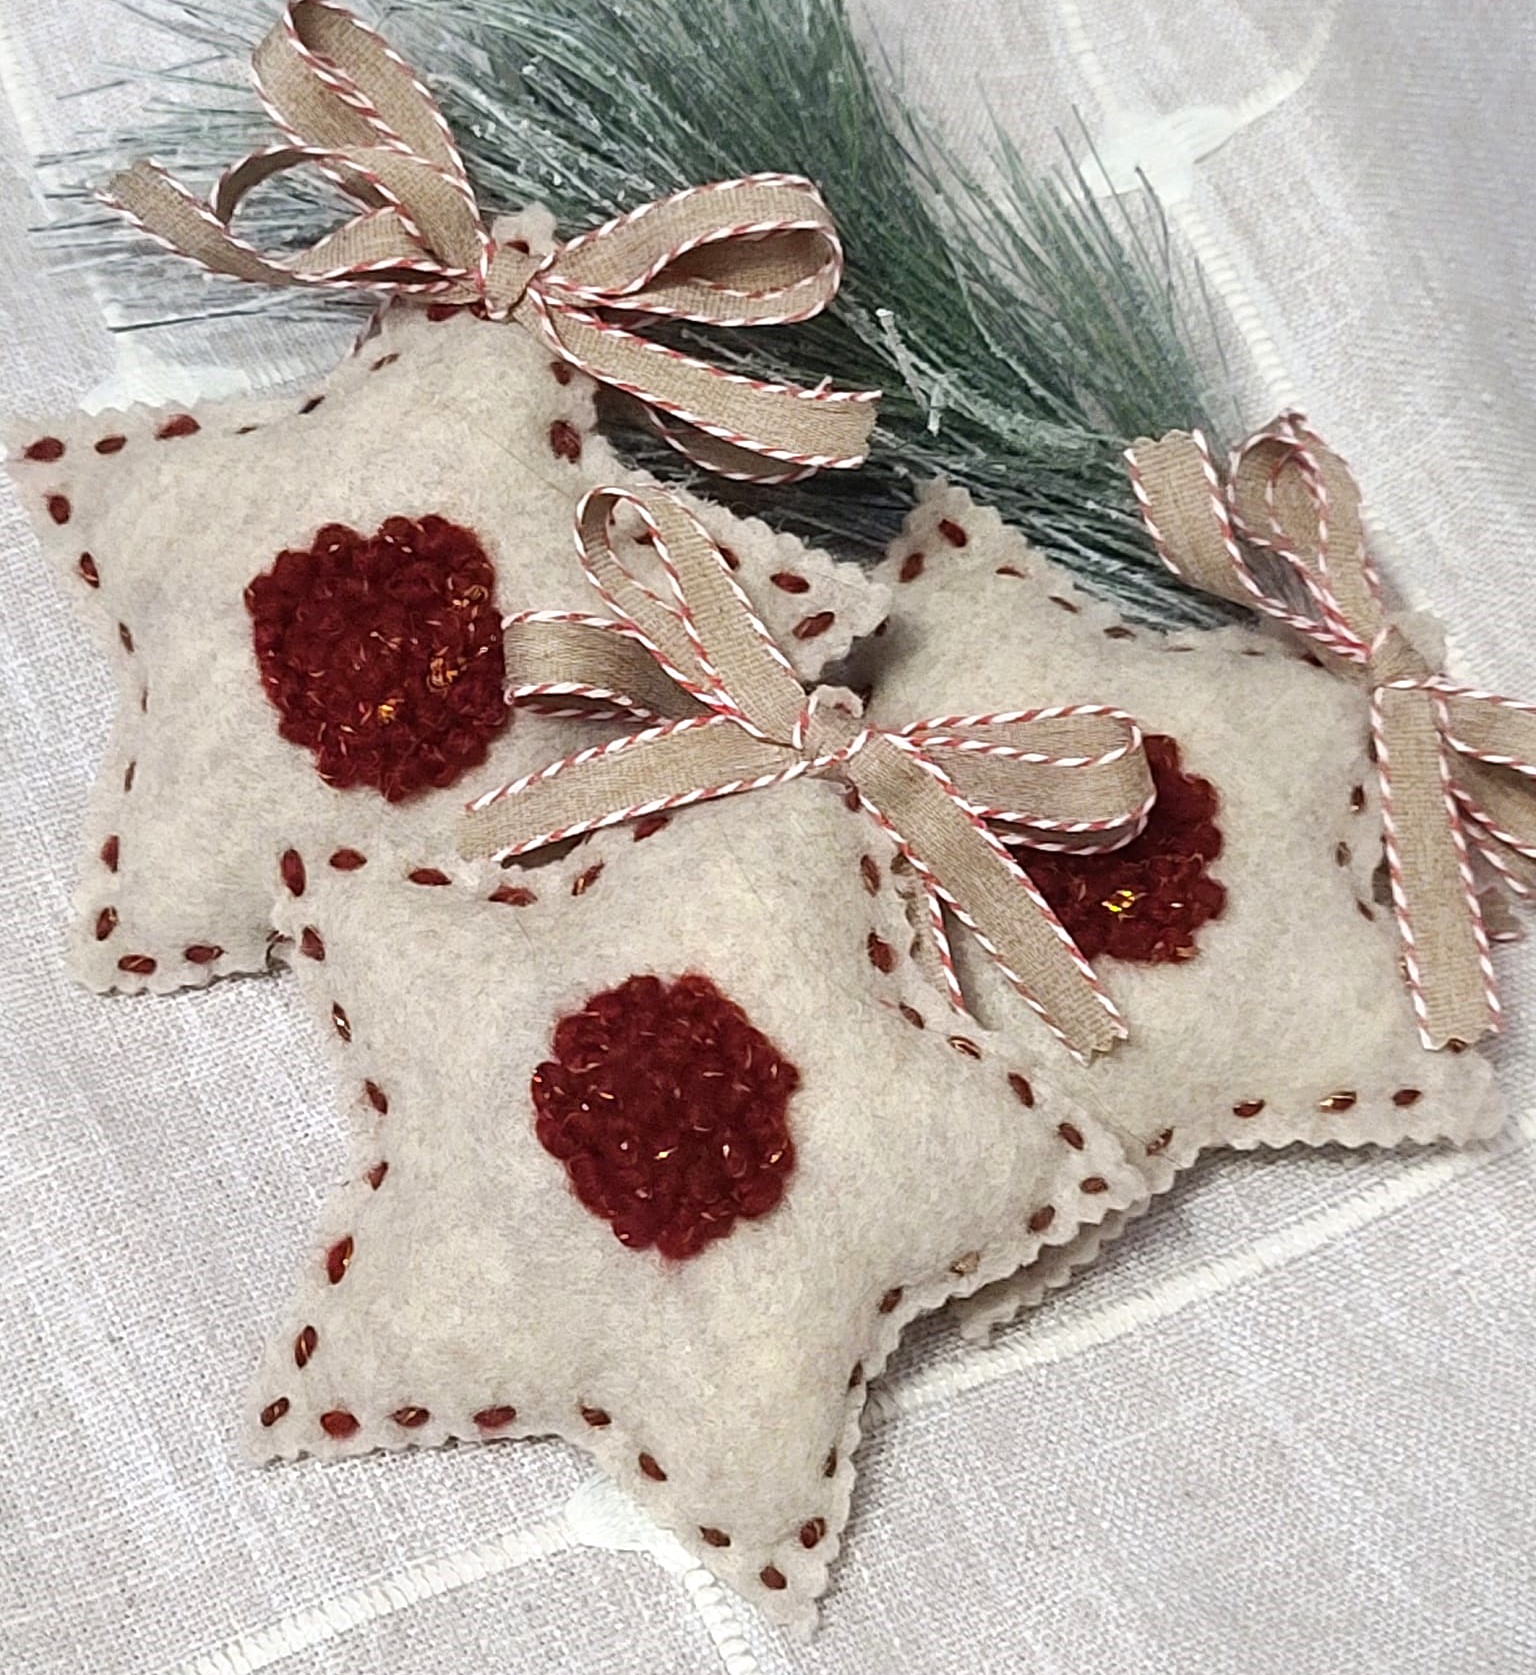 Sugar cookie lindor jelly star felt ornament or bowl filler